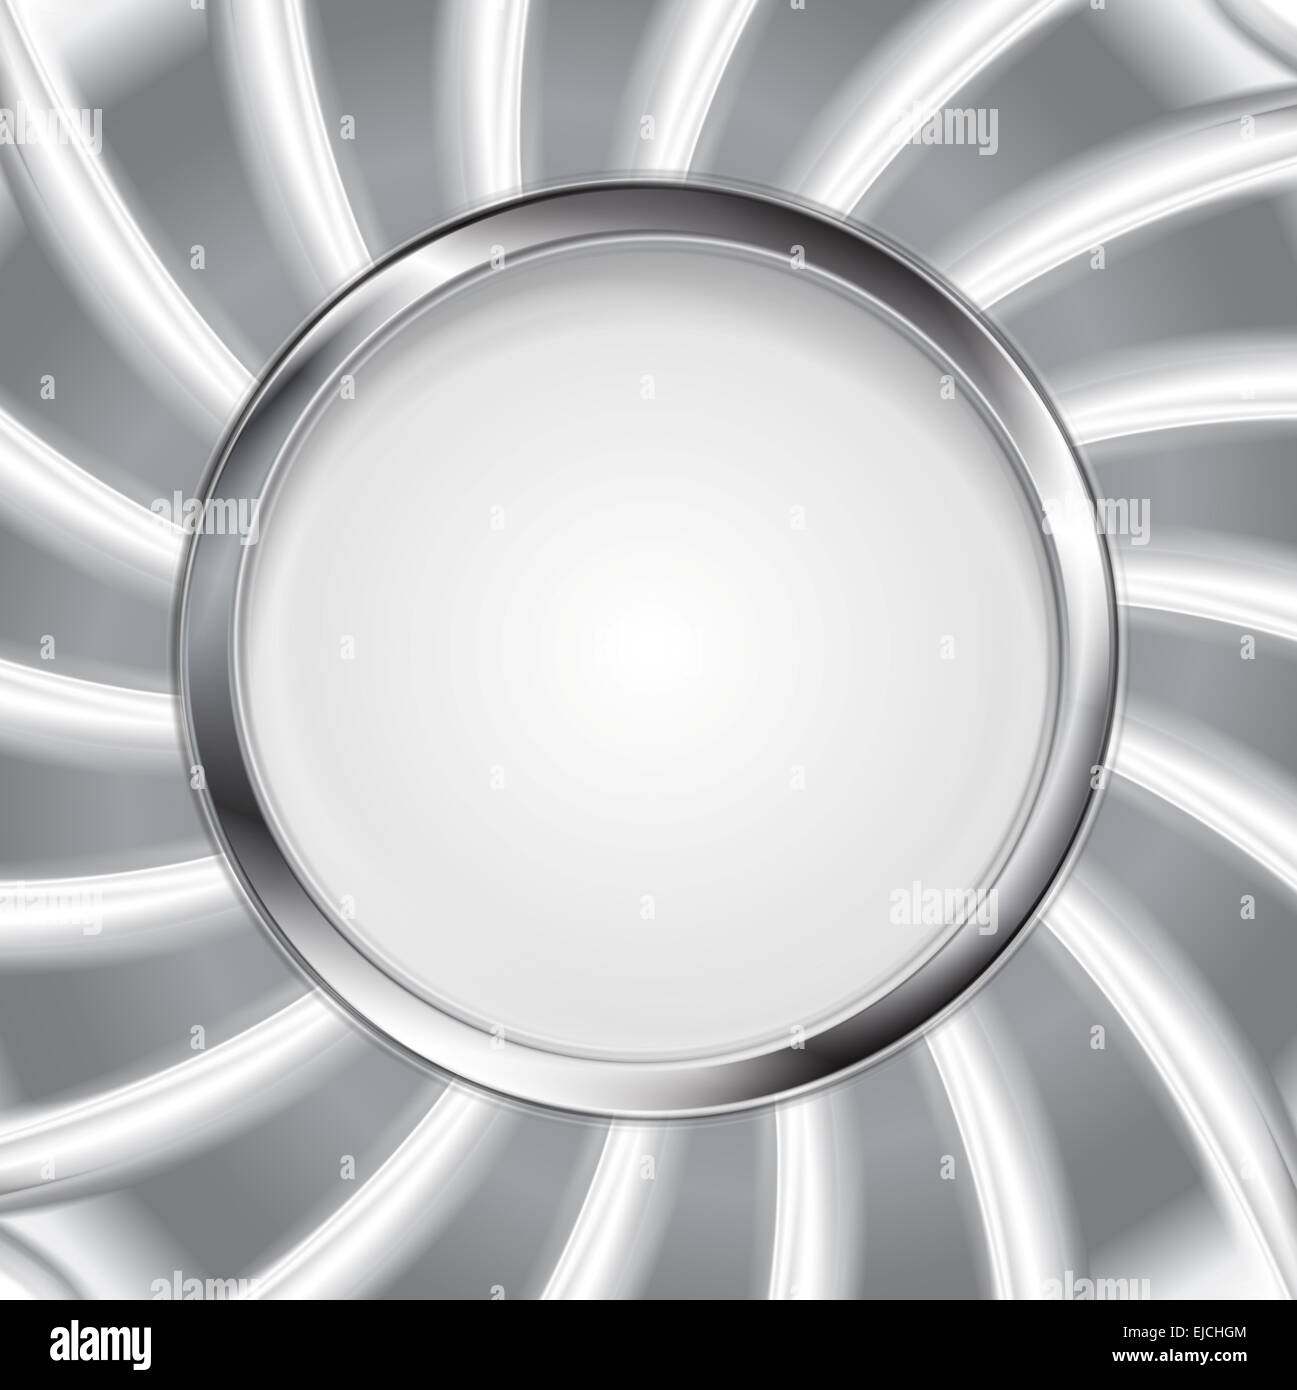 Metallic silver logo background Stock Photo